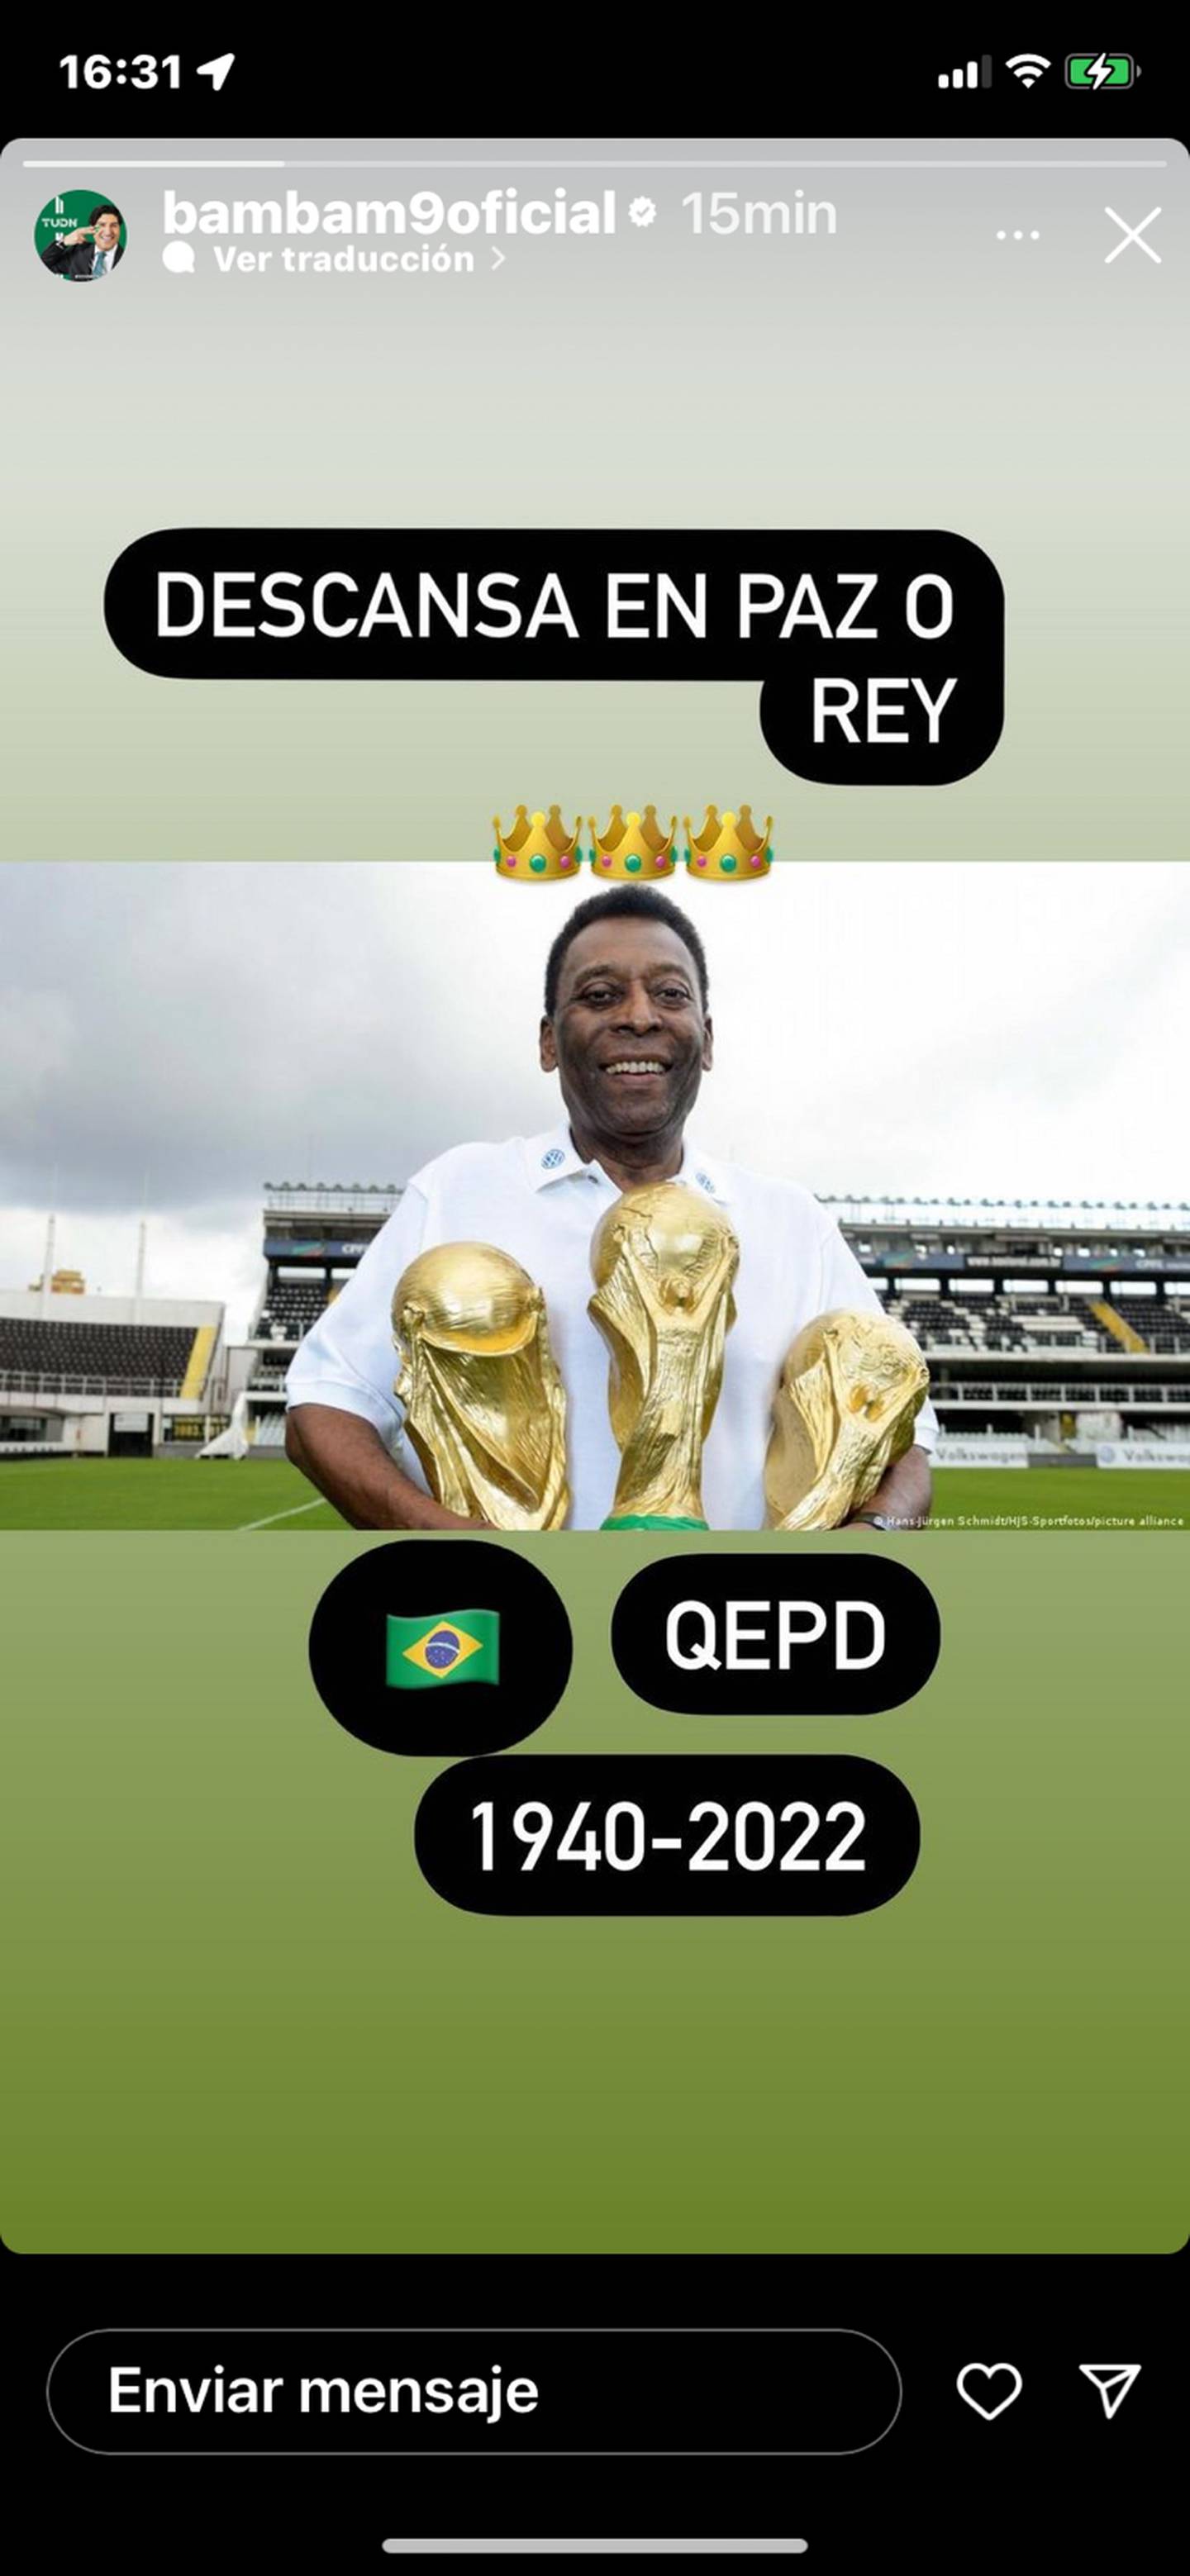 El exgoleador de la Roja publicó su homenaje a Pelé en las historias de su cuenta de Instagram.